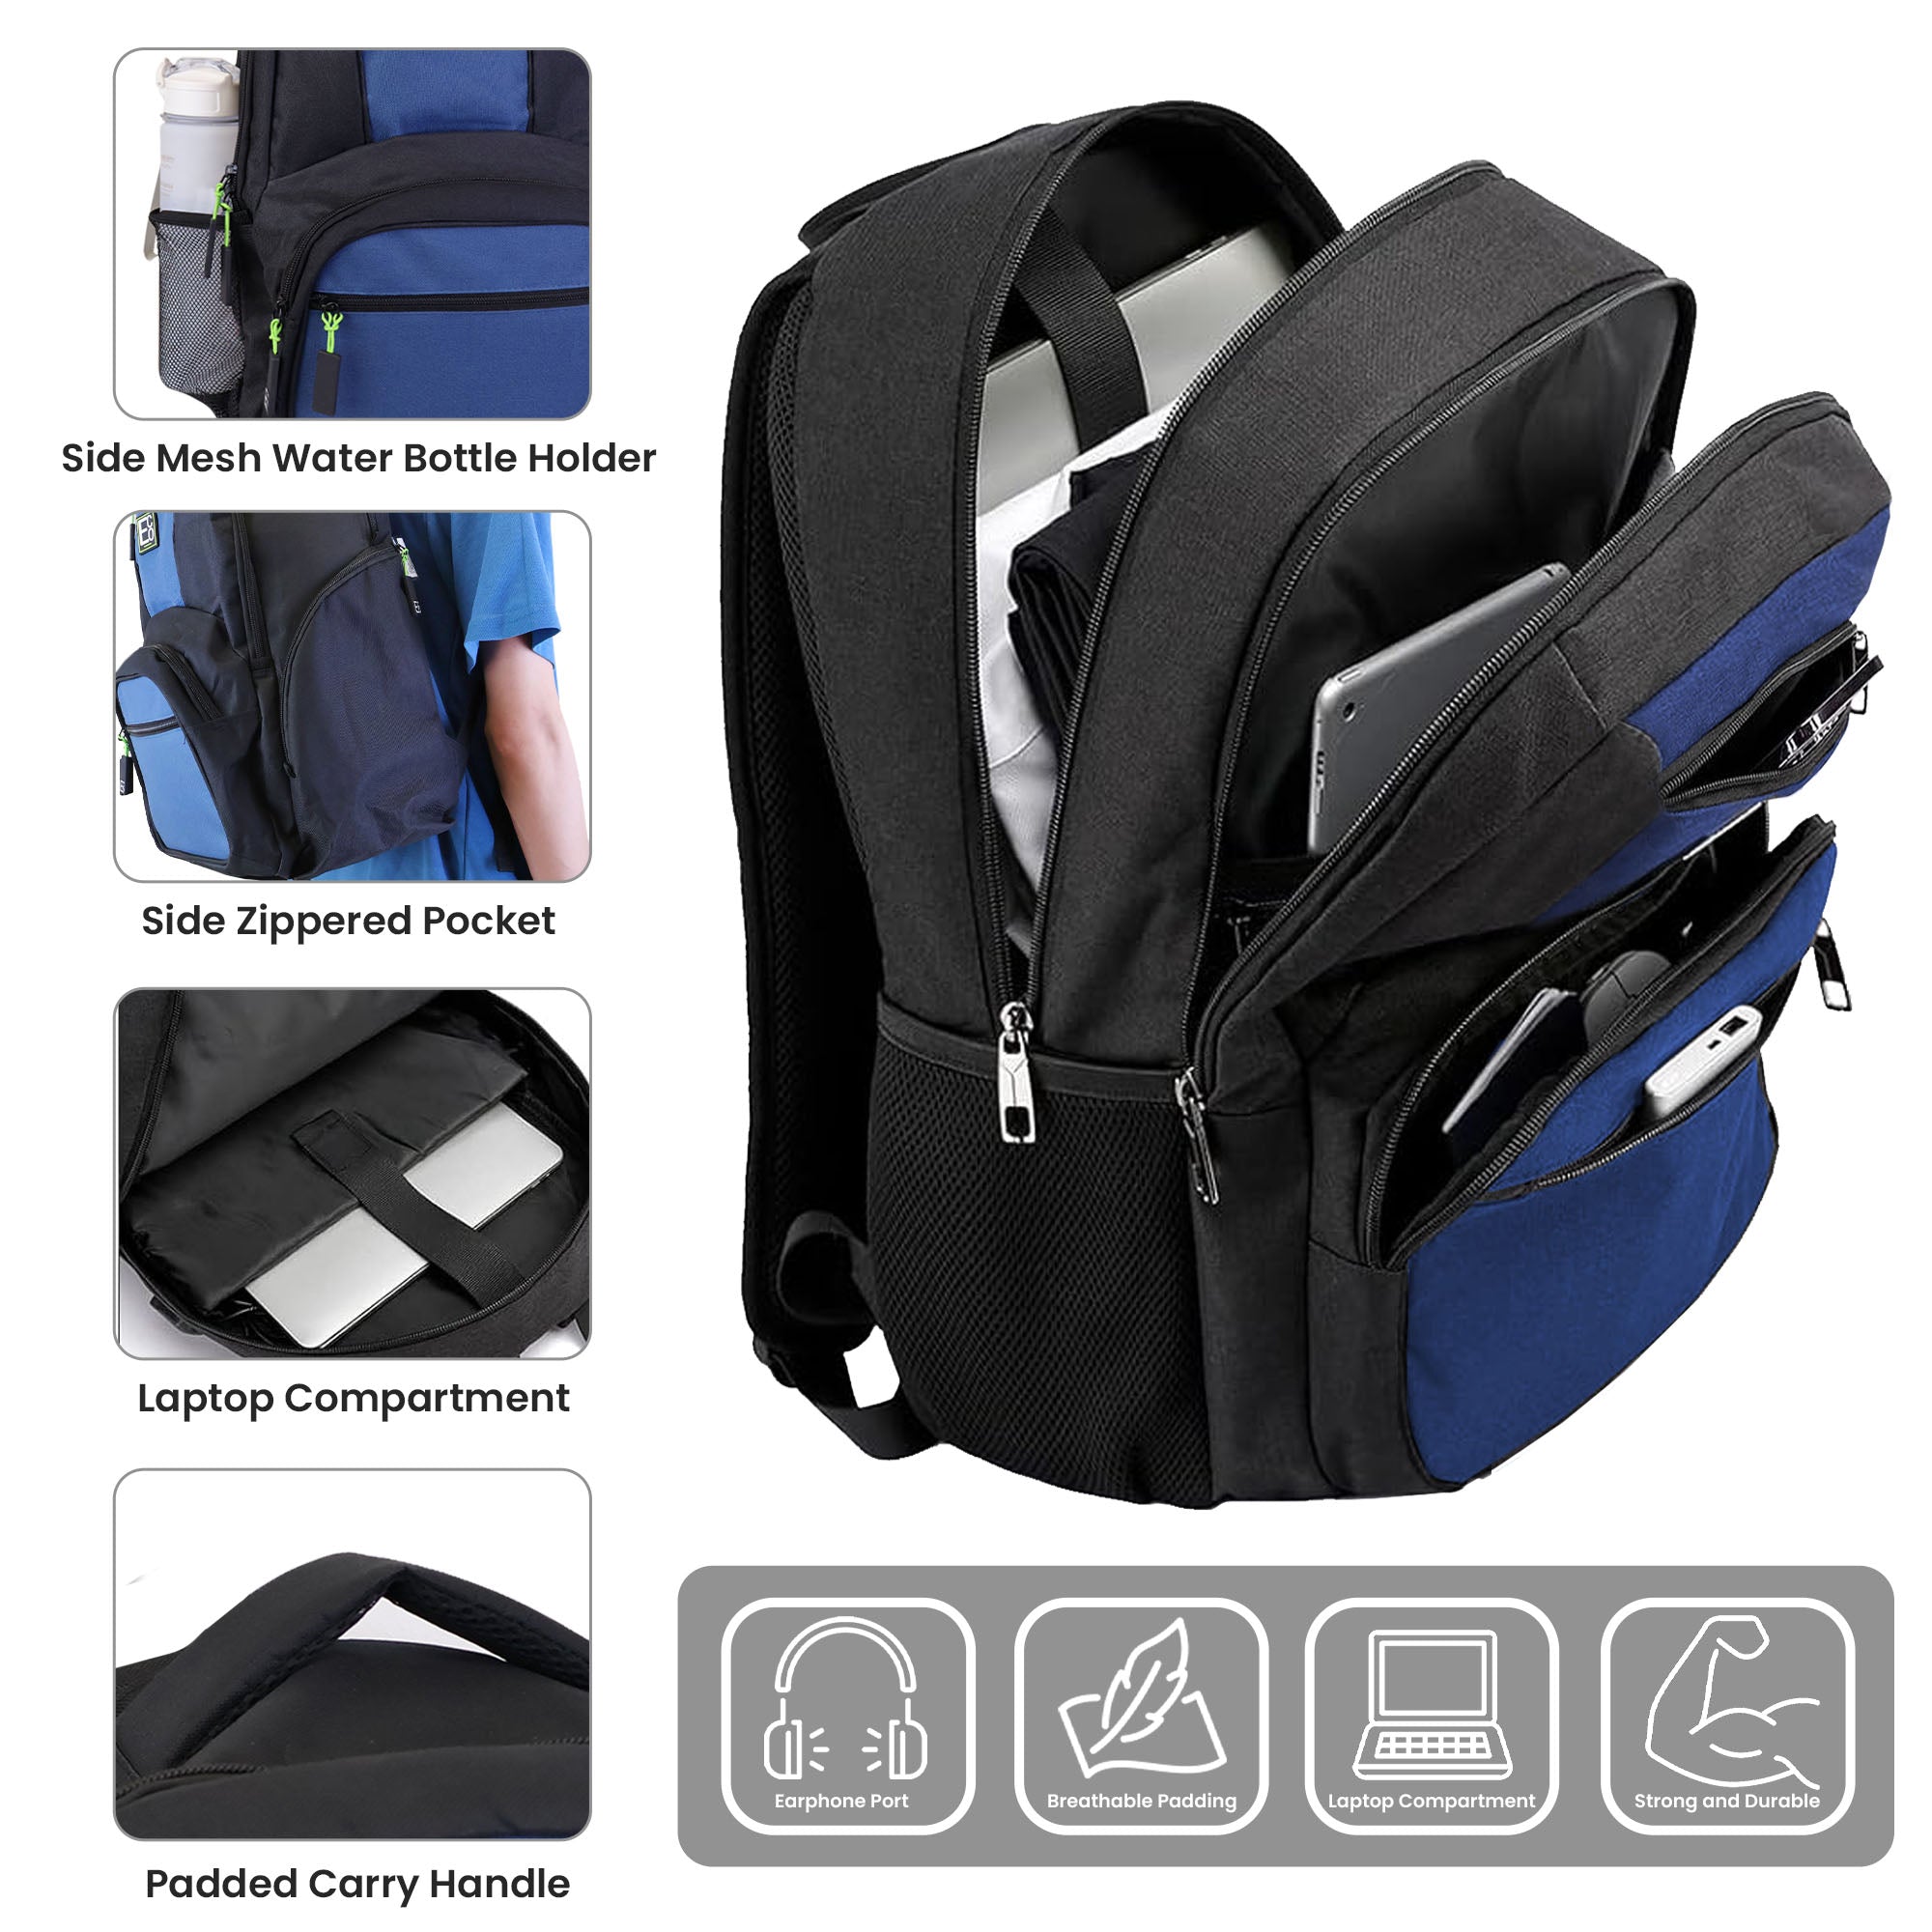 Laptop-Rucksack für Studenten – Marineblaues Design